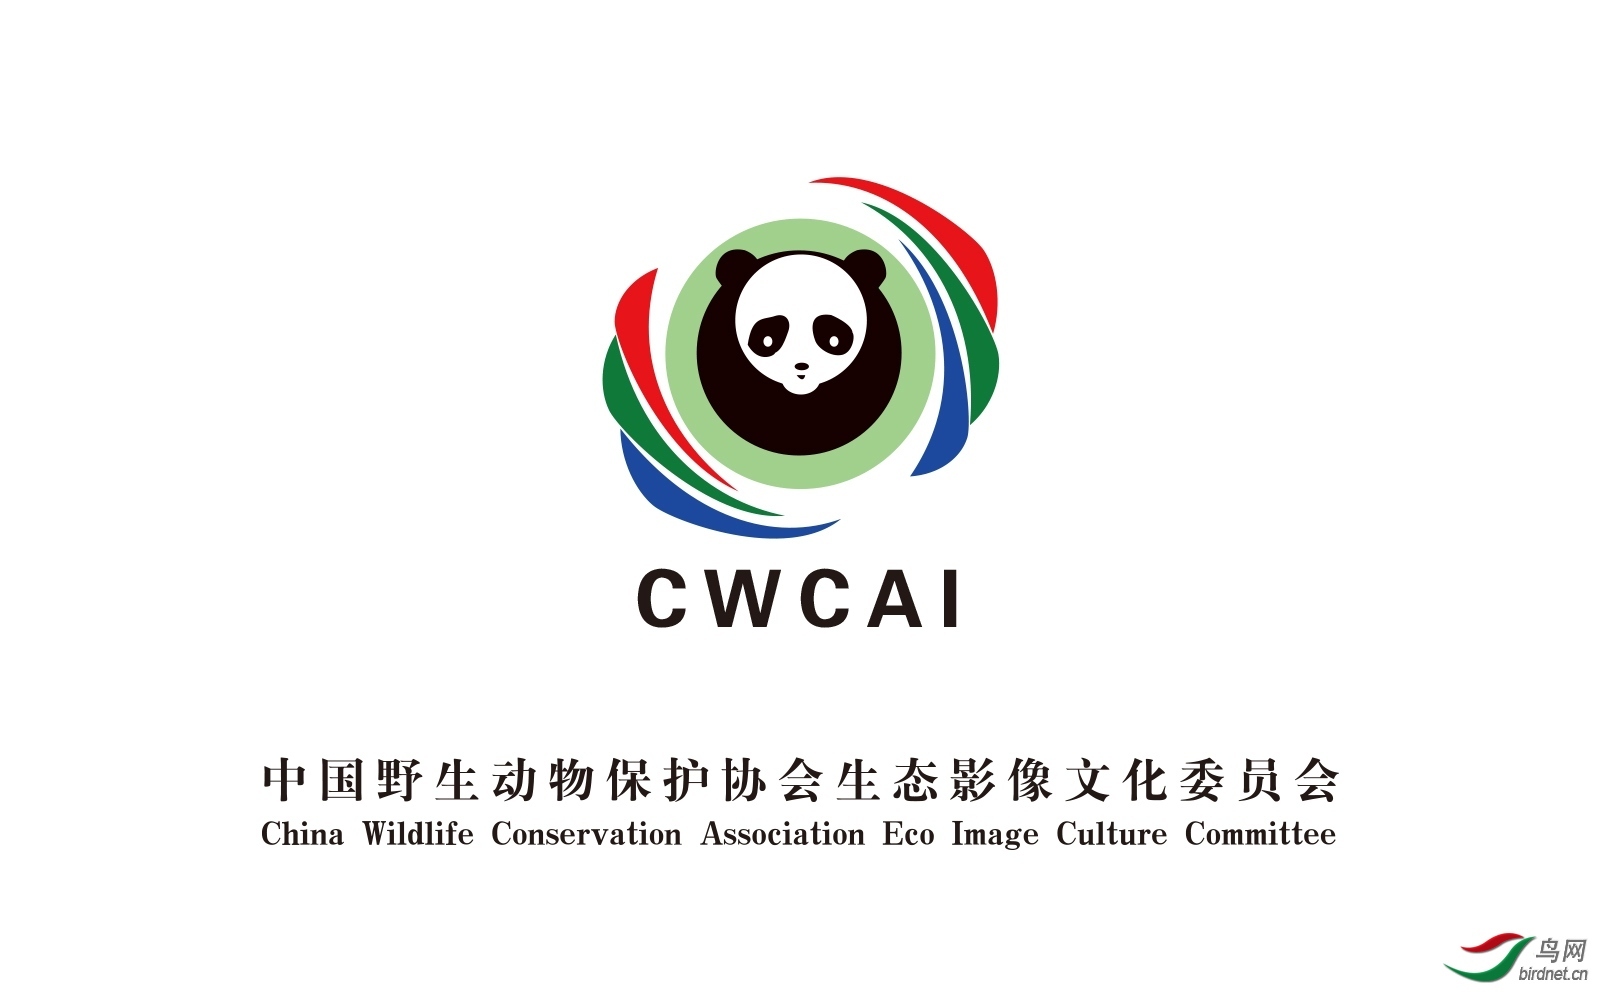 中国野生动物保护协会生态影像文化委员会徽标logo